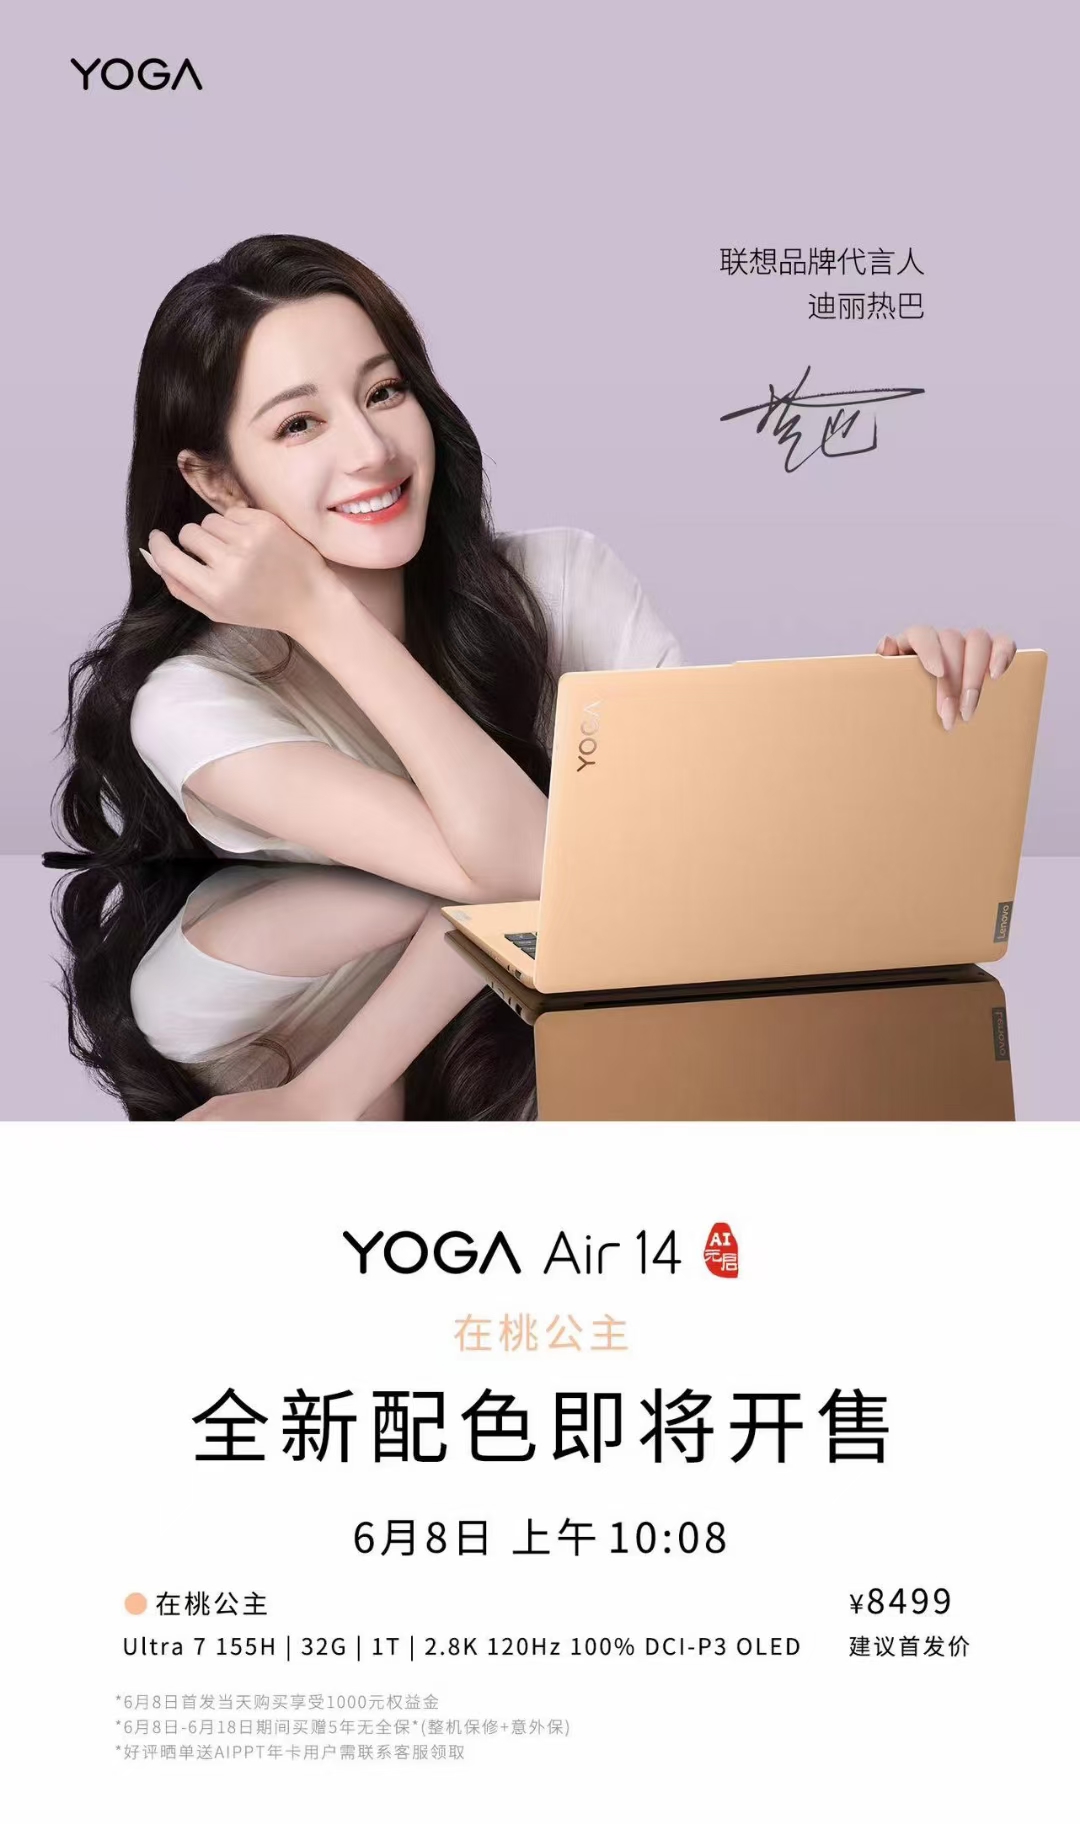 8499 元：联想 YOGA Air 14 新增“在桃公主”配色，6 月 8 日开售